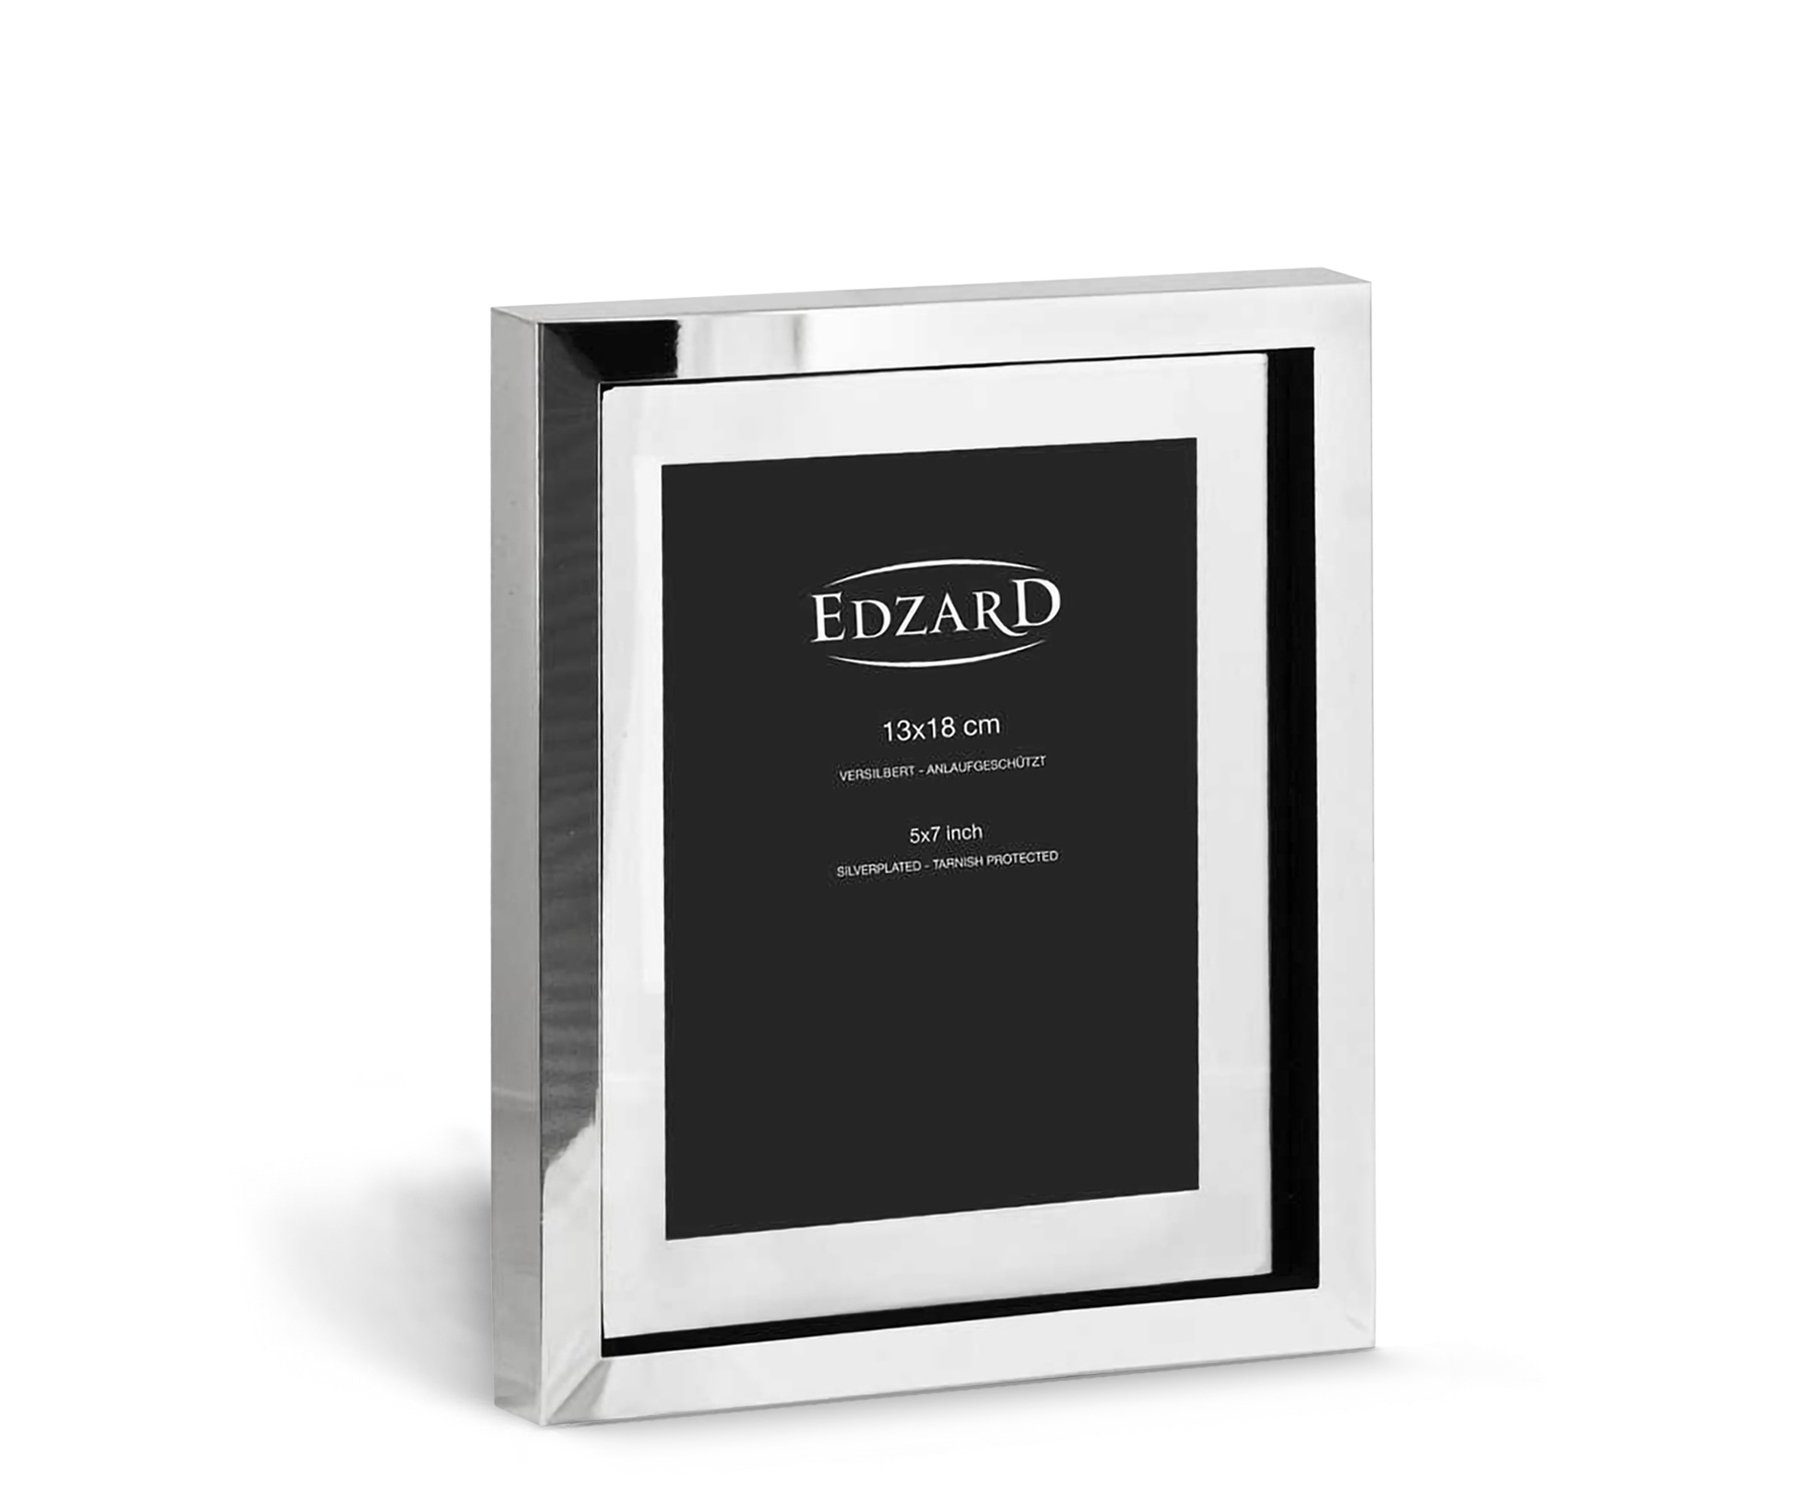 EDZARD Bilderrahmen Caserta, versilbert und anlaufgeschützt, für 13x18 cm Bilder - Fotorahmen